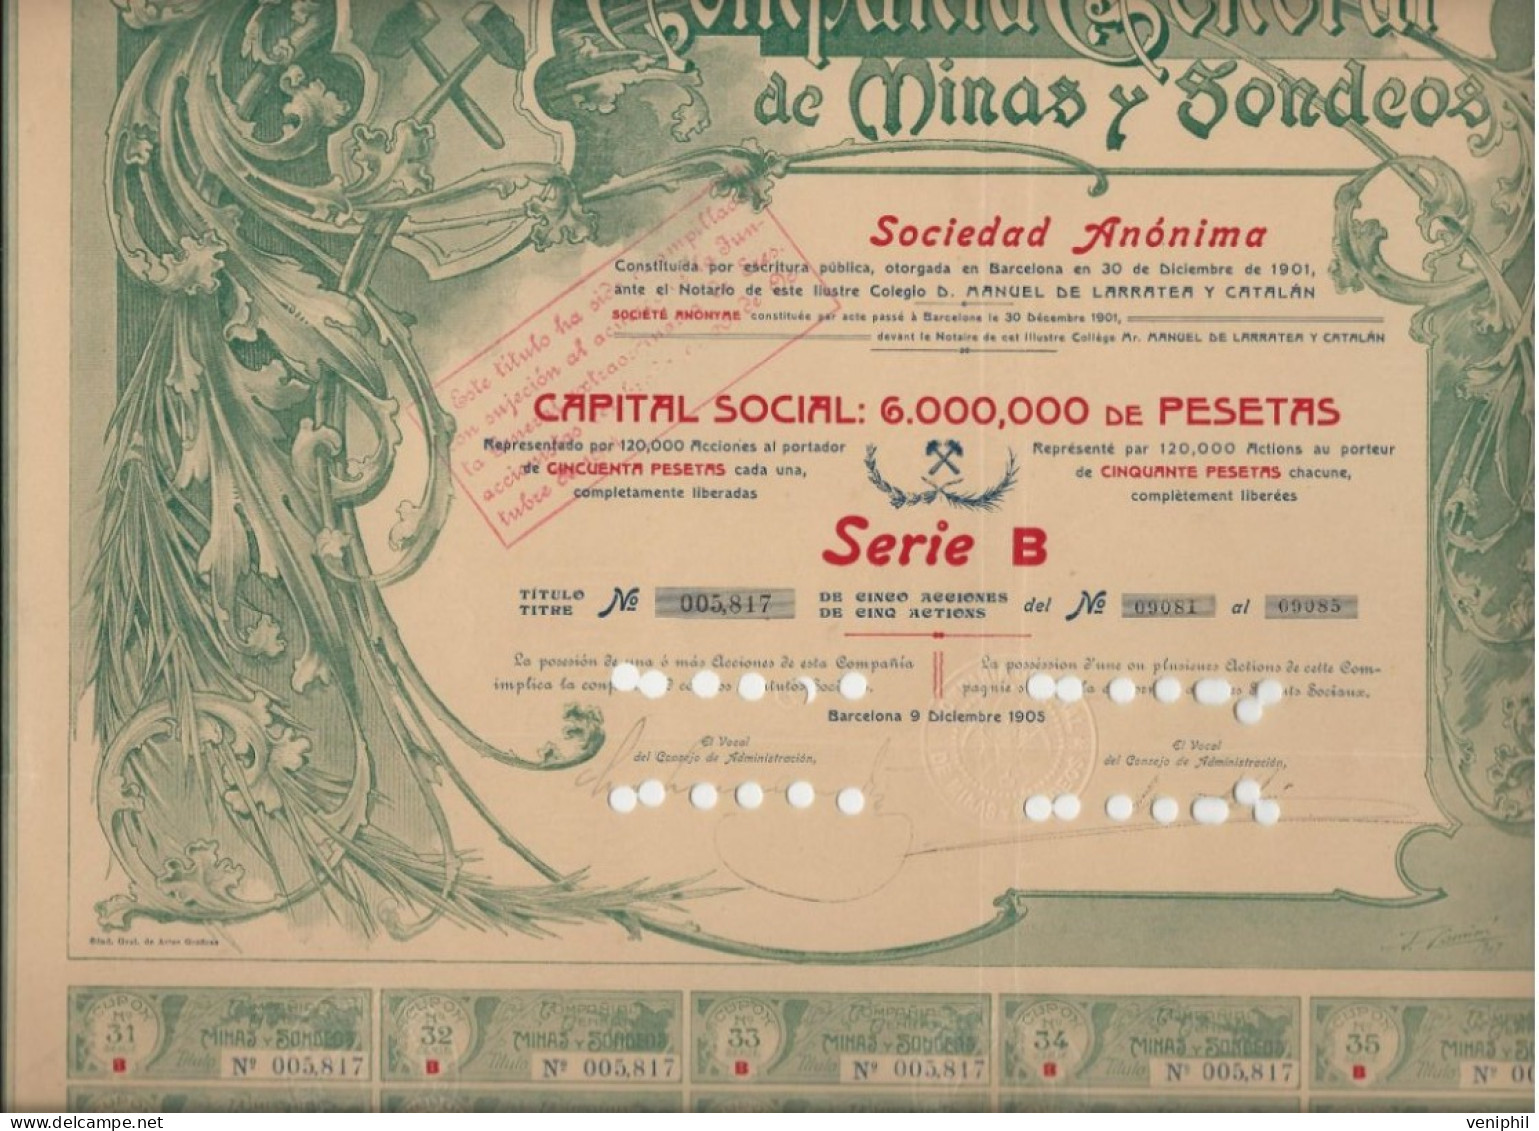 COMPAGNIE GENERAL DES MINES Y SODEOS - TITRE DE 5 ACTIONS DE 50 PSETAS -1905 BARCELONE - Mineral